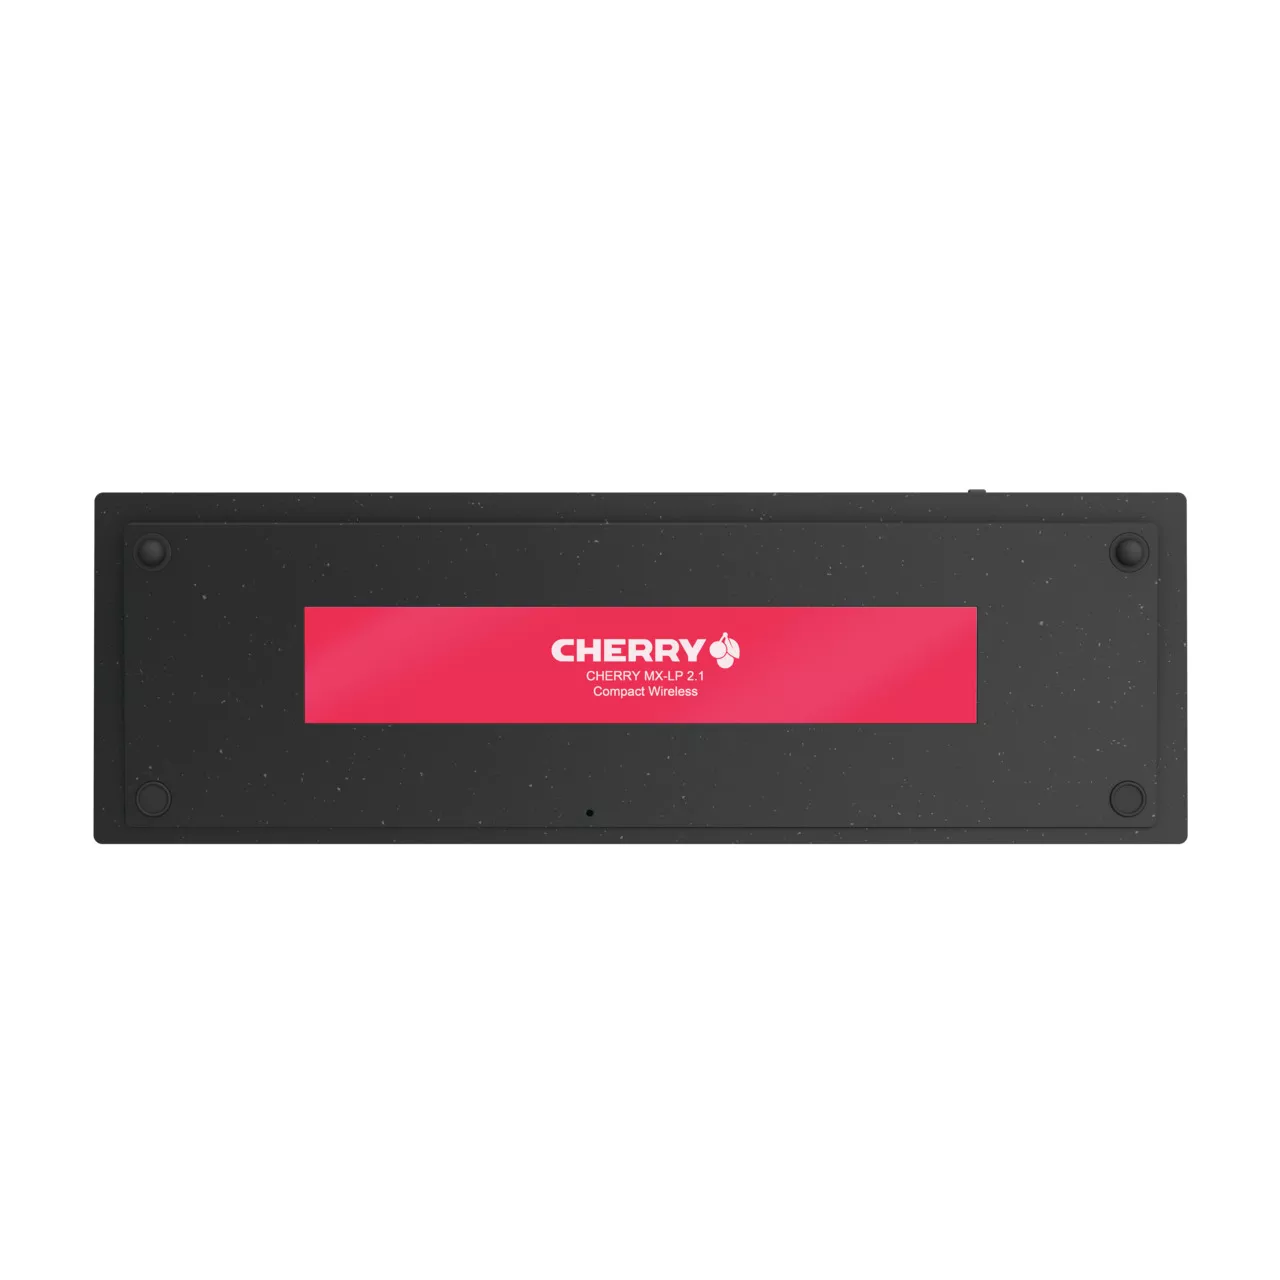 Vente CHERRY MX-LP 2.1 Compact Wireless CHERRY au meilleur prix - visuel 4